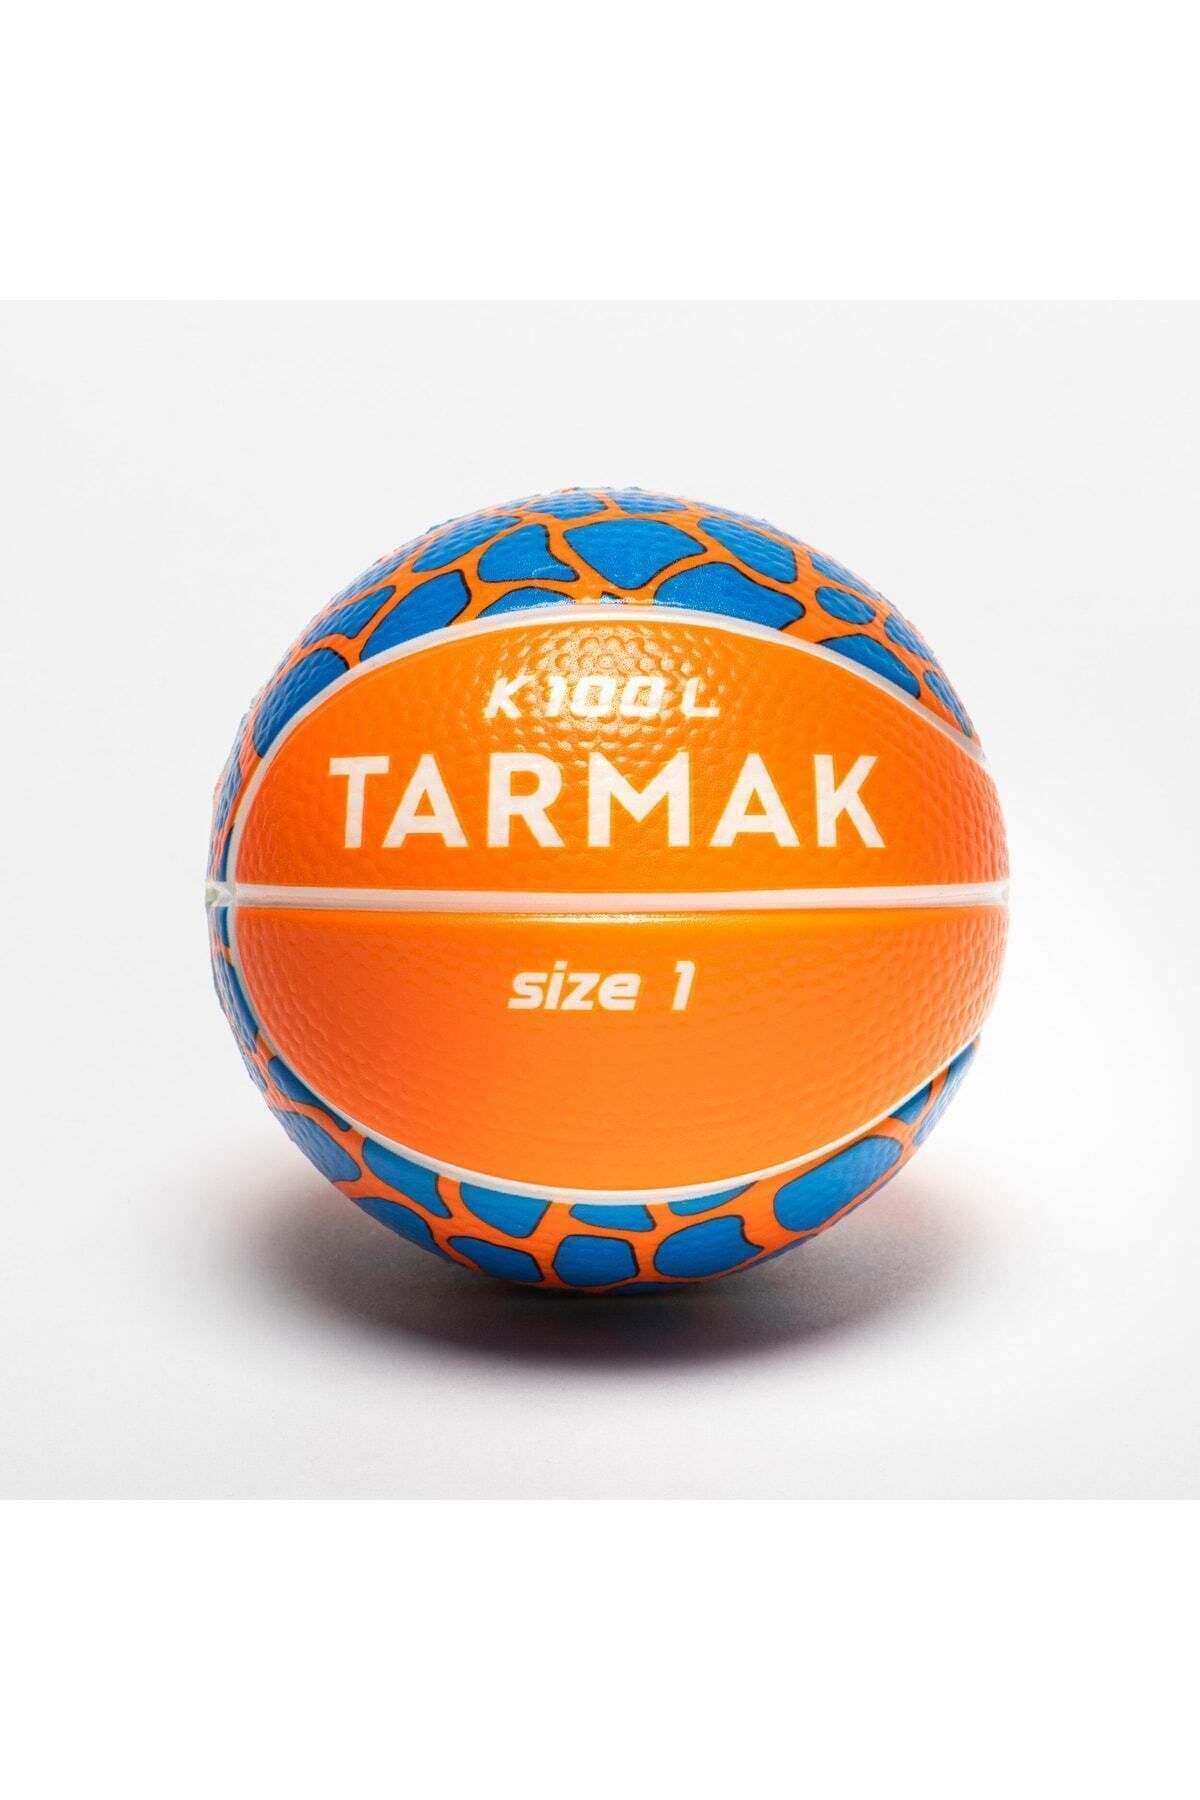 Decathlon Tarmak Çocuk Basketbol Topu - 1 Numara - Turuncu / Mavi - K100 Sünger